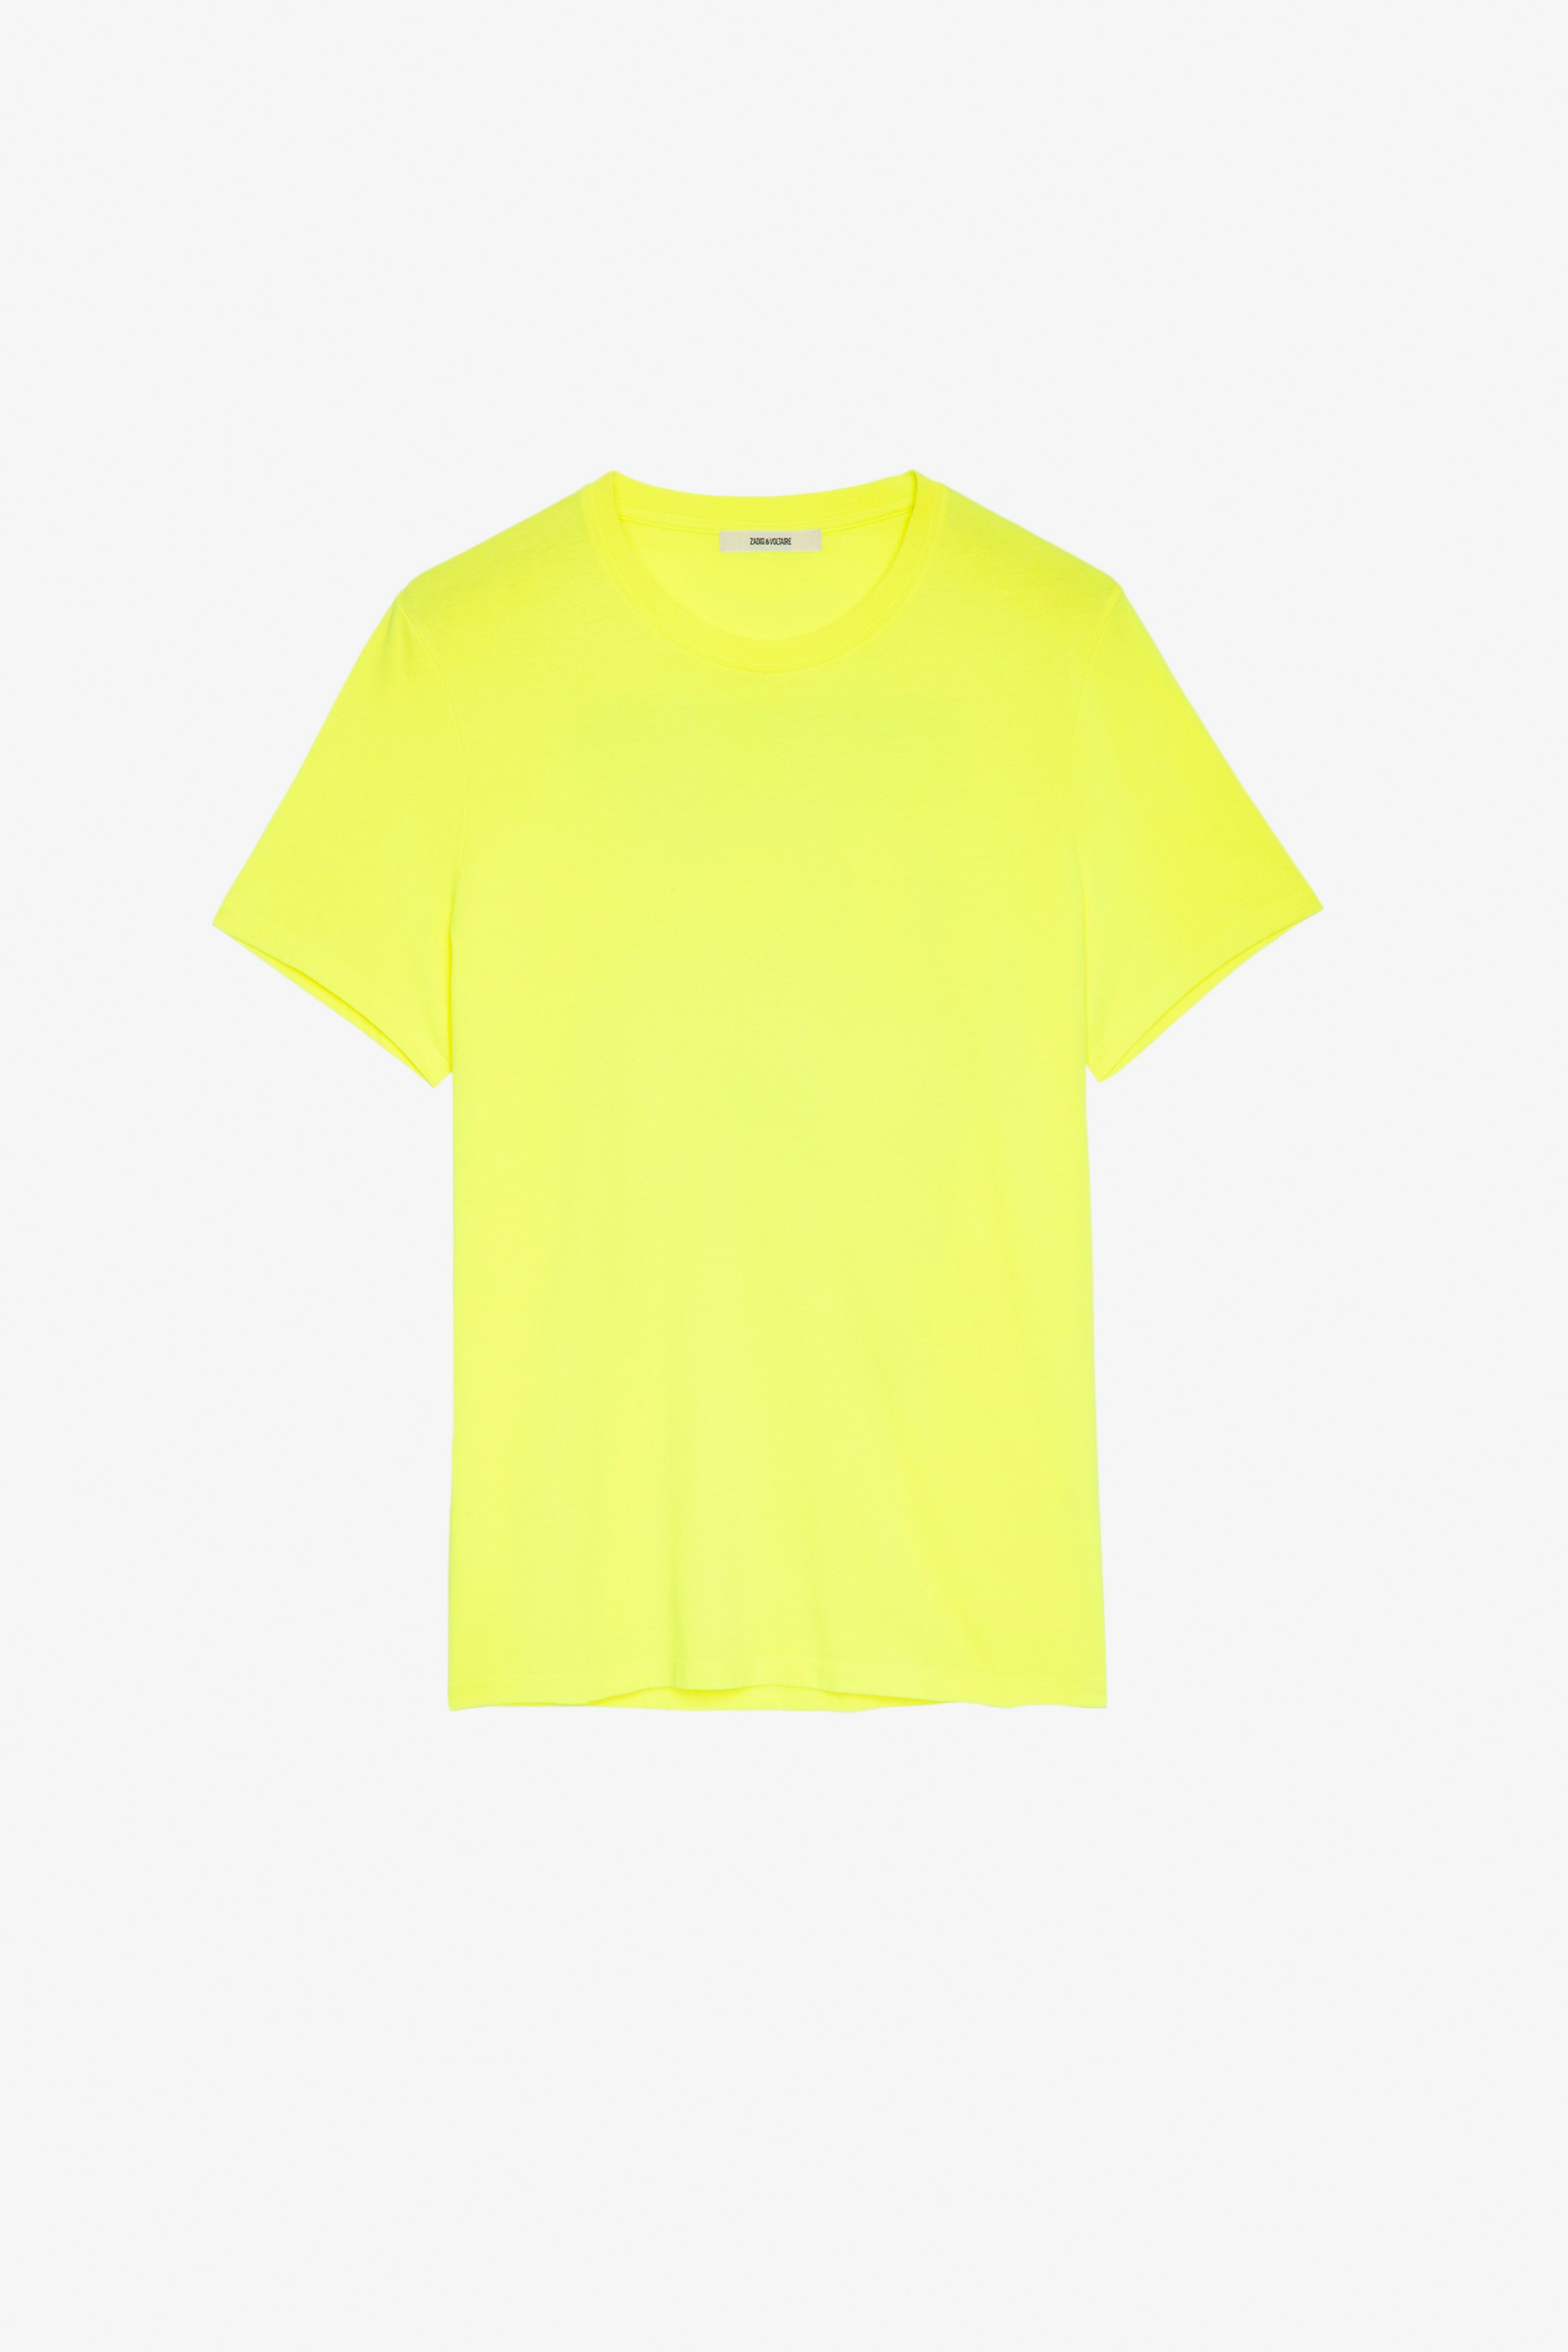 T-Shirt Ted Herren-T-Shirt aus gelber Baumwolle mit Palmen-Fotoprint auf der Rückseite